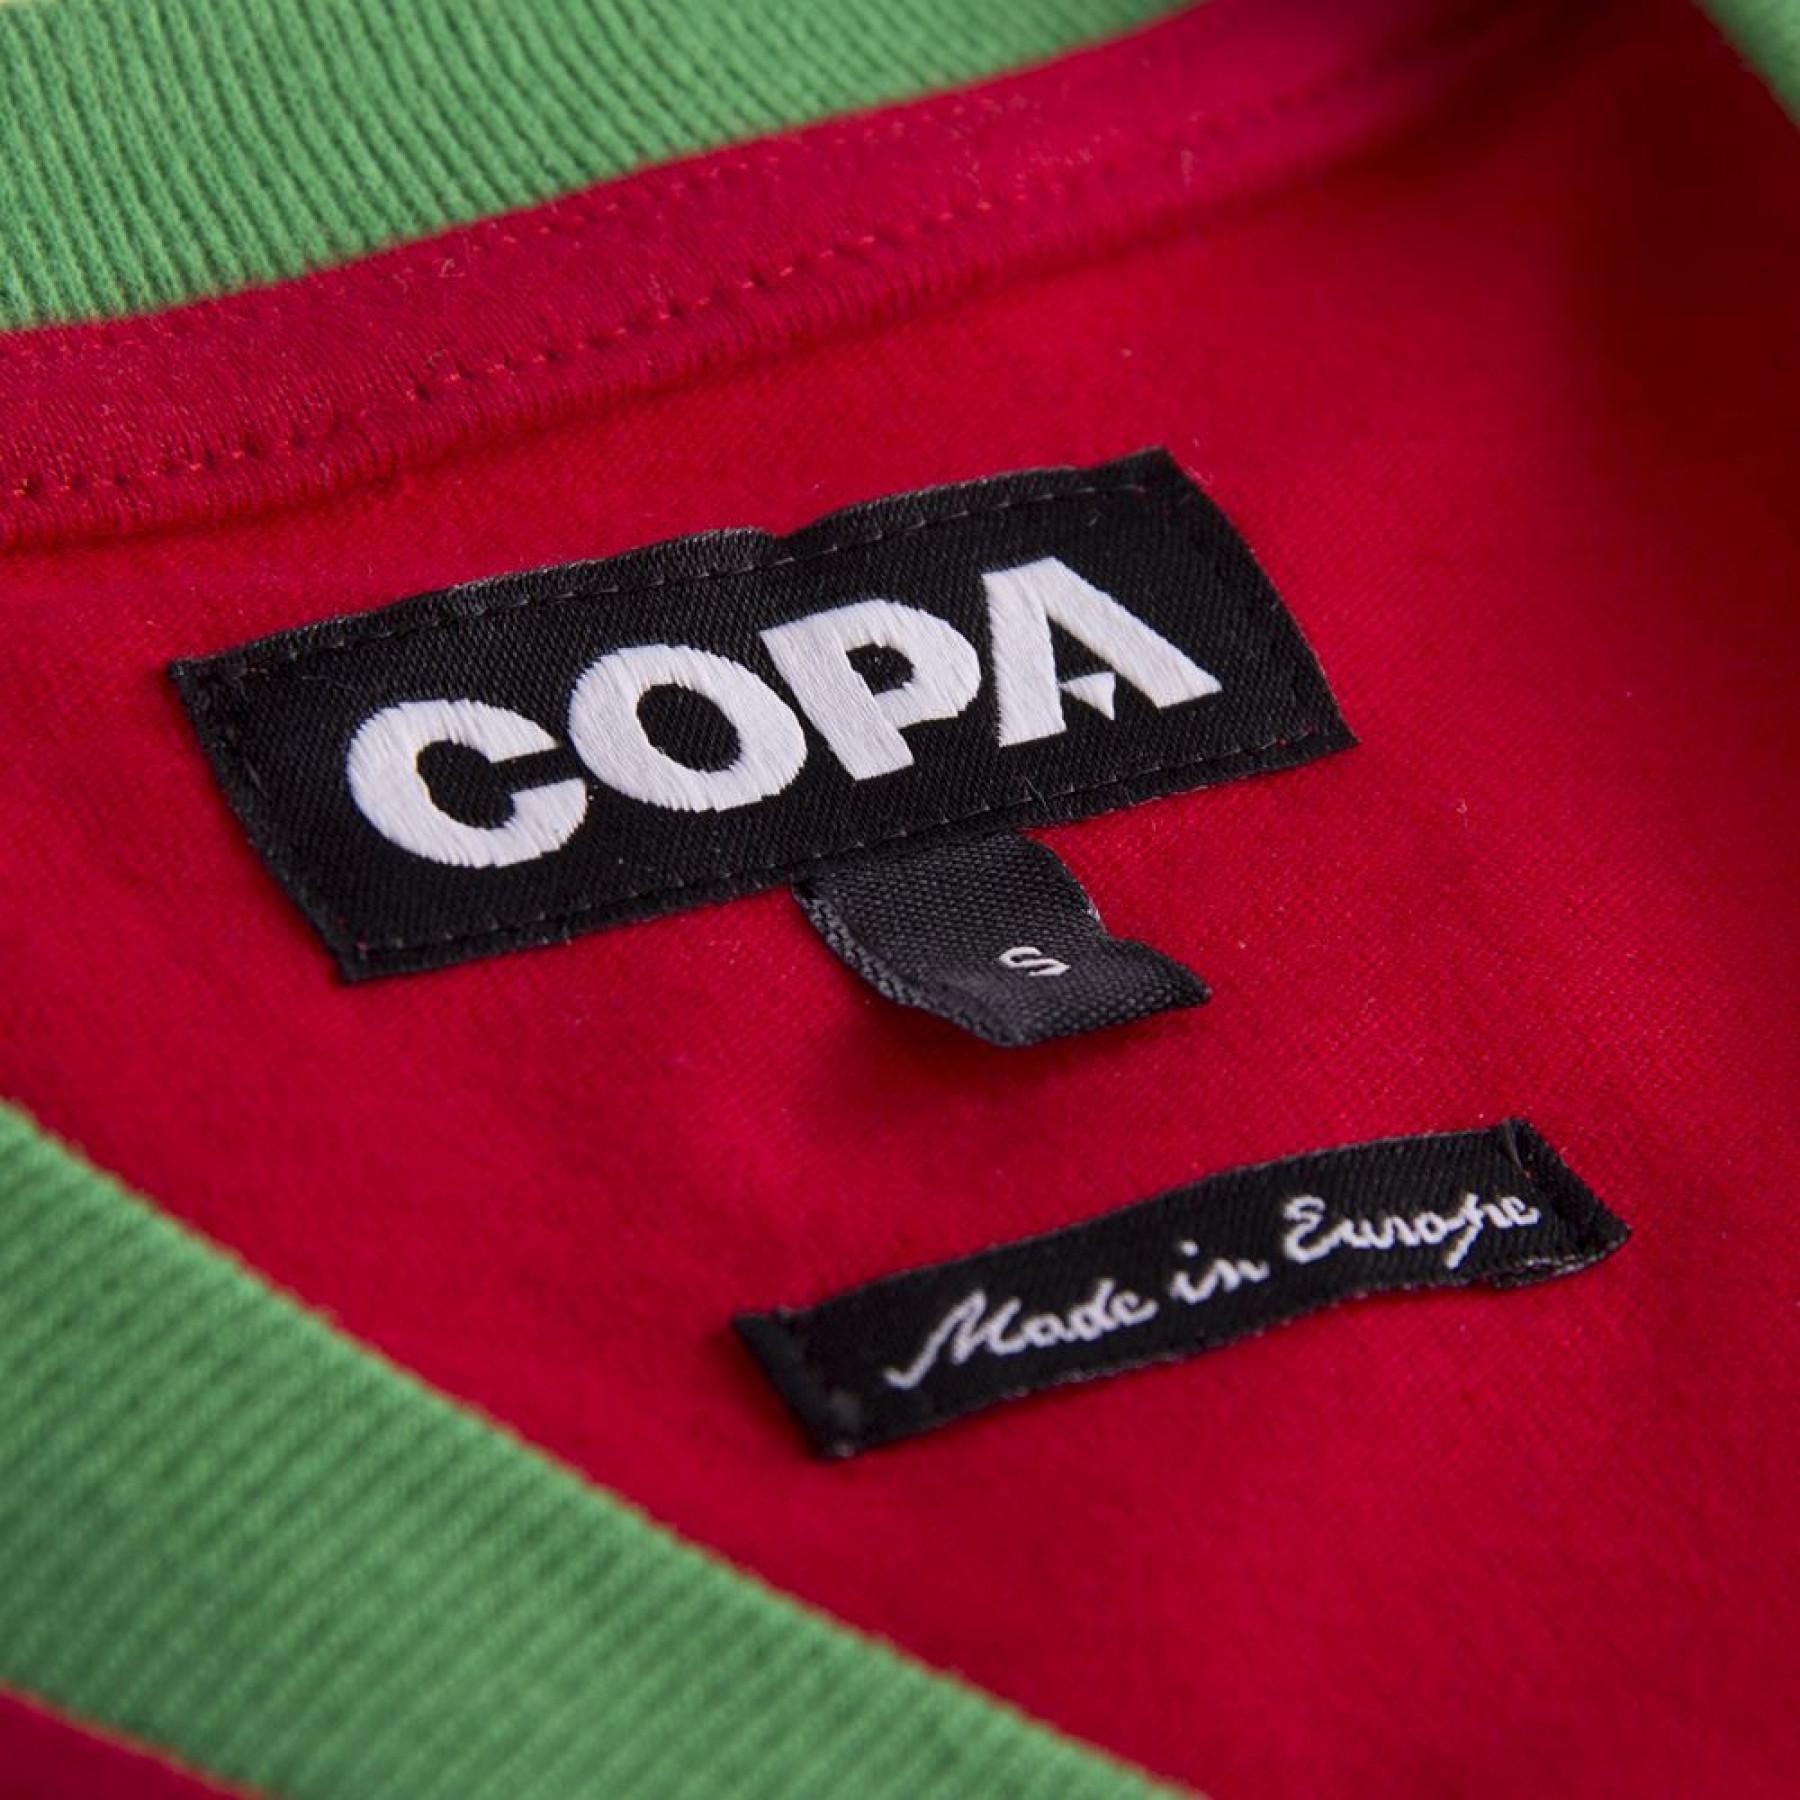 Koszulka Copa Maroc 1970